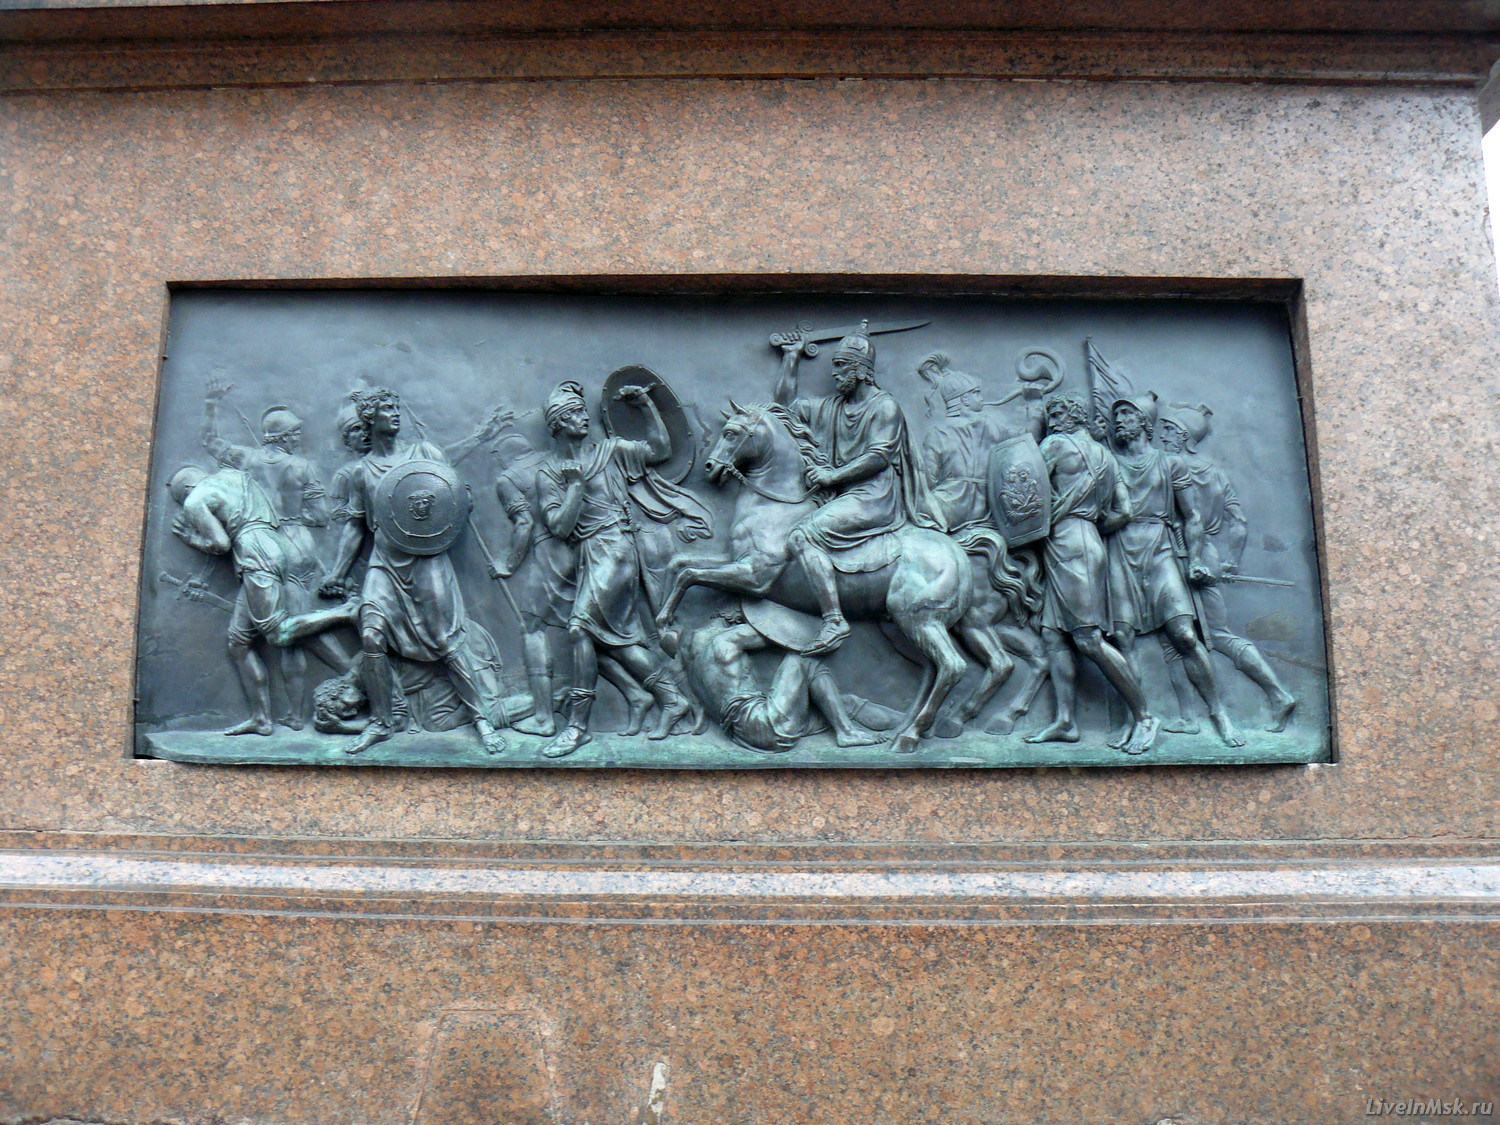 Барельеф «Изгнание поляков из Москвы» на памятнику Минину и Пожарскому